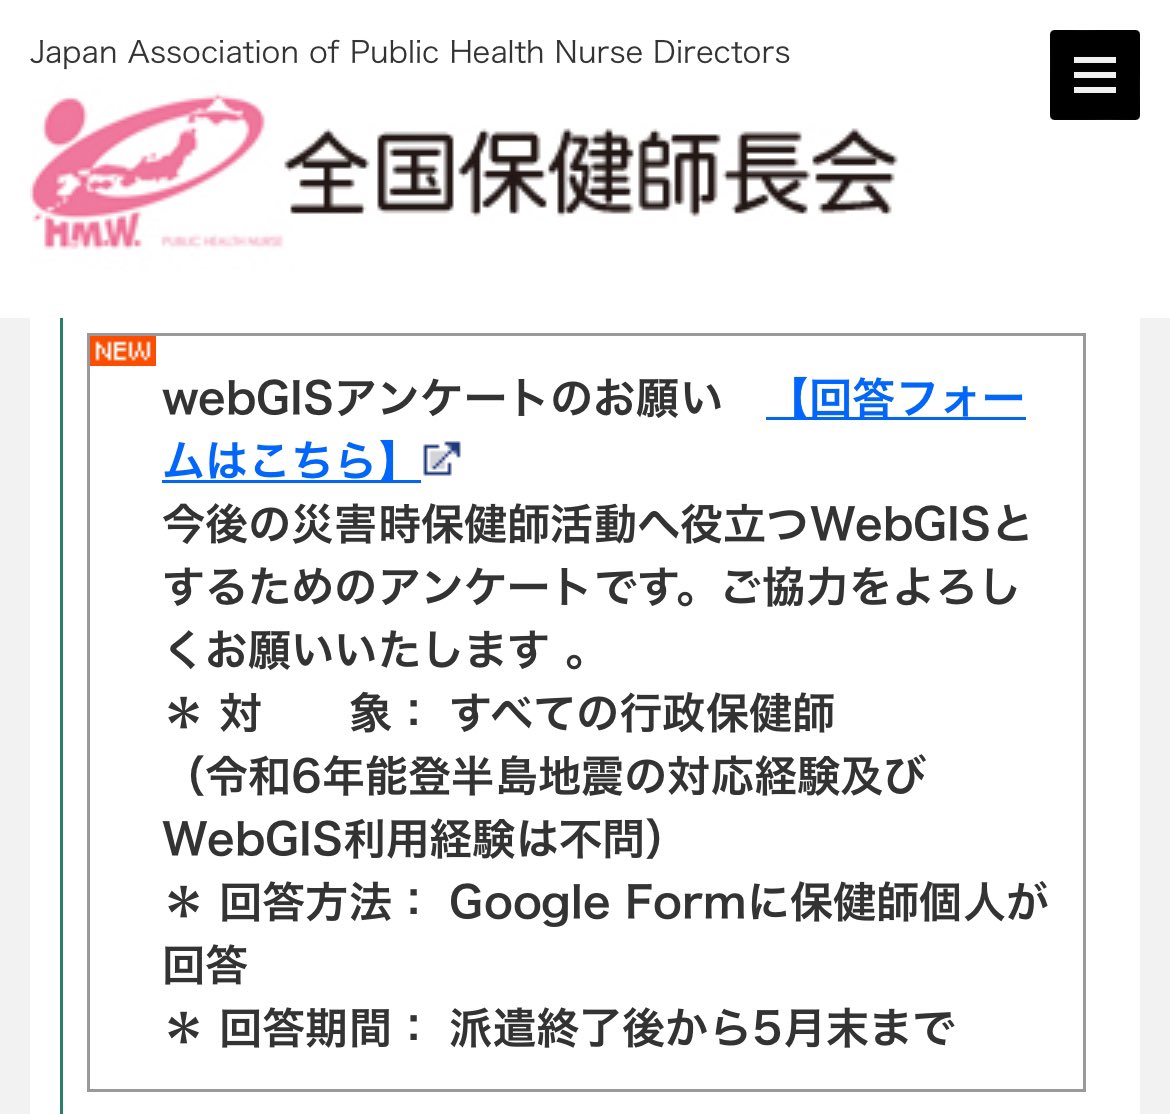 行政保健師の皆様にお願いです！
能登半島地震の保健師活動支援WebGISのアンケートを実施中です。
5分で回答完了する内容です。
行政保健師全員を対象としwebGIS使用経験や被災地活動経験有無は問いません！
使いやすいwebGISとするため皆様のご協力をよろしくお願いします🙇‍♂️
nacphn.jp/02/saigai/inde…